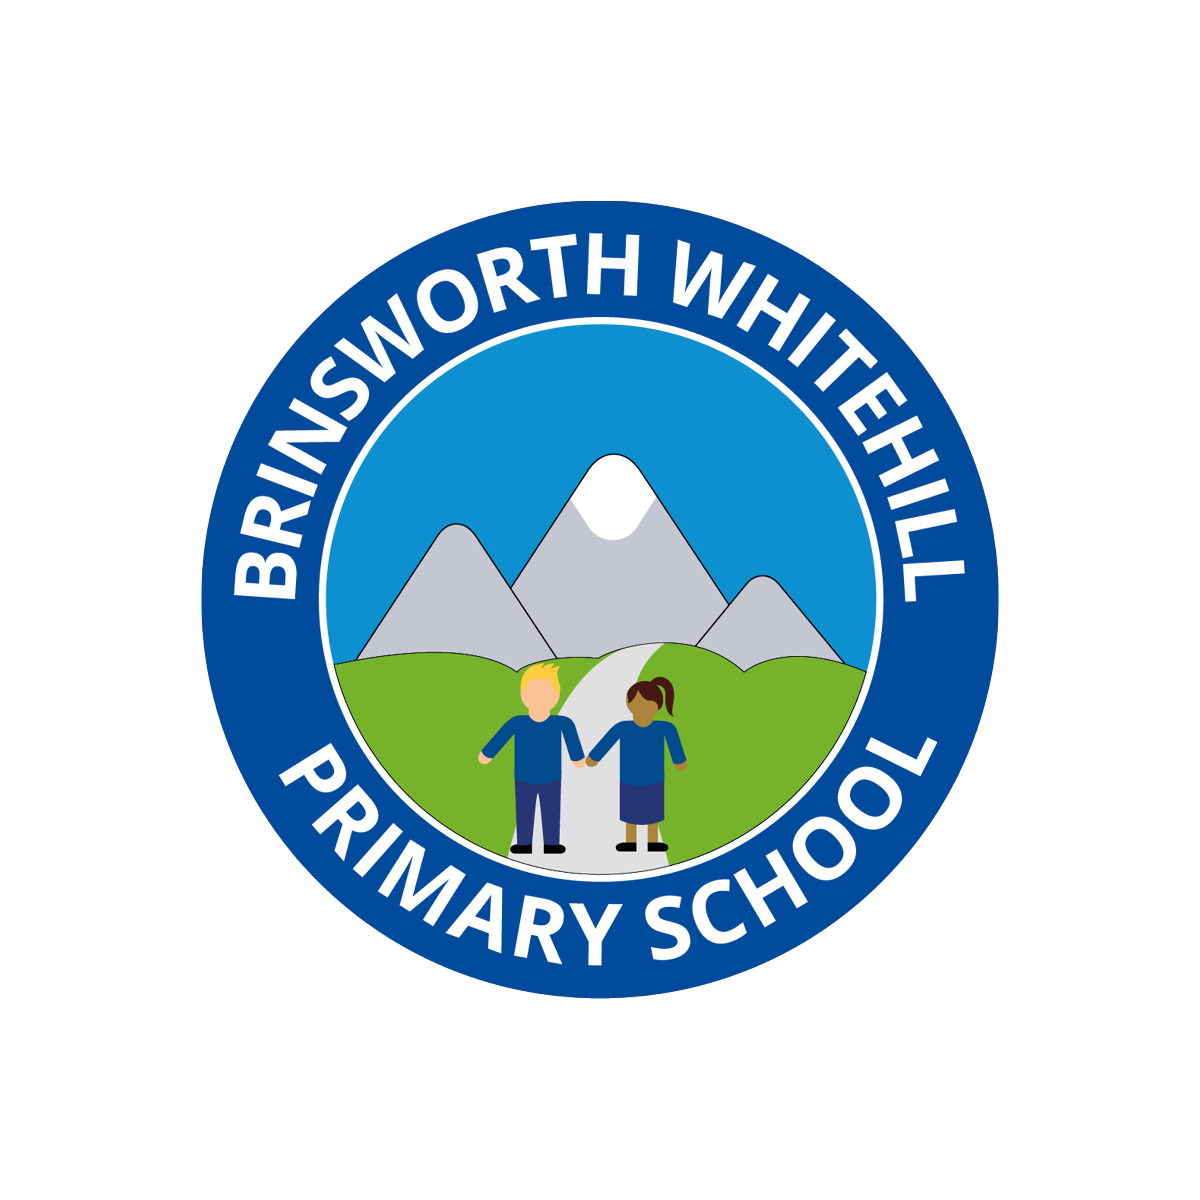 Brinsworth Whitehill Primary